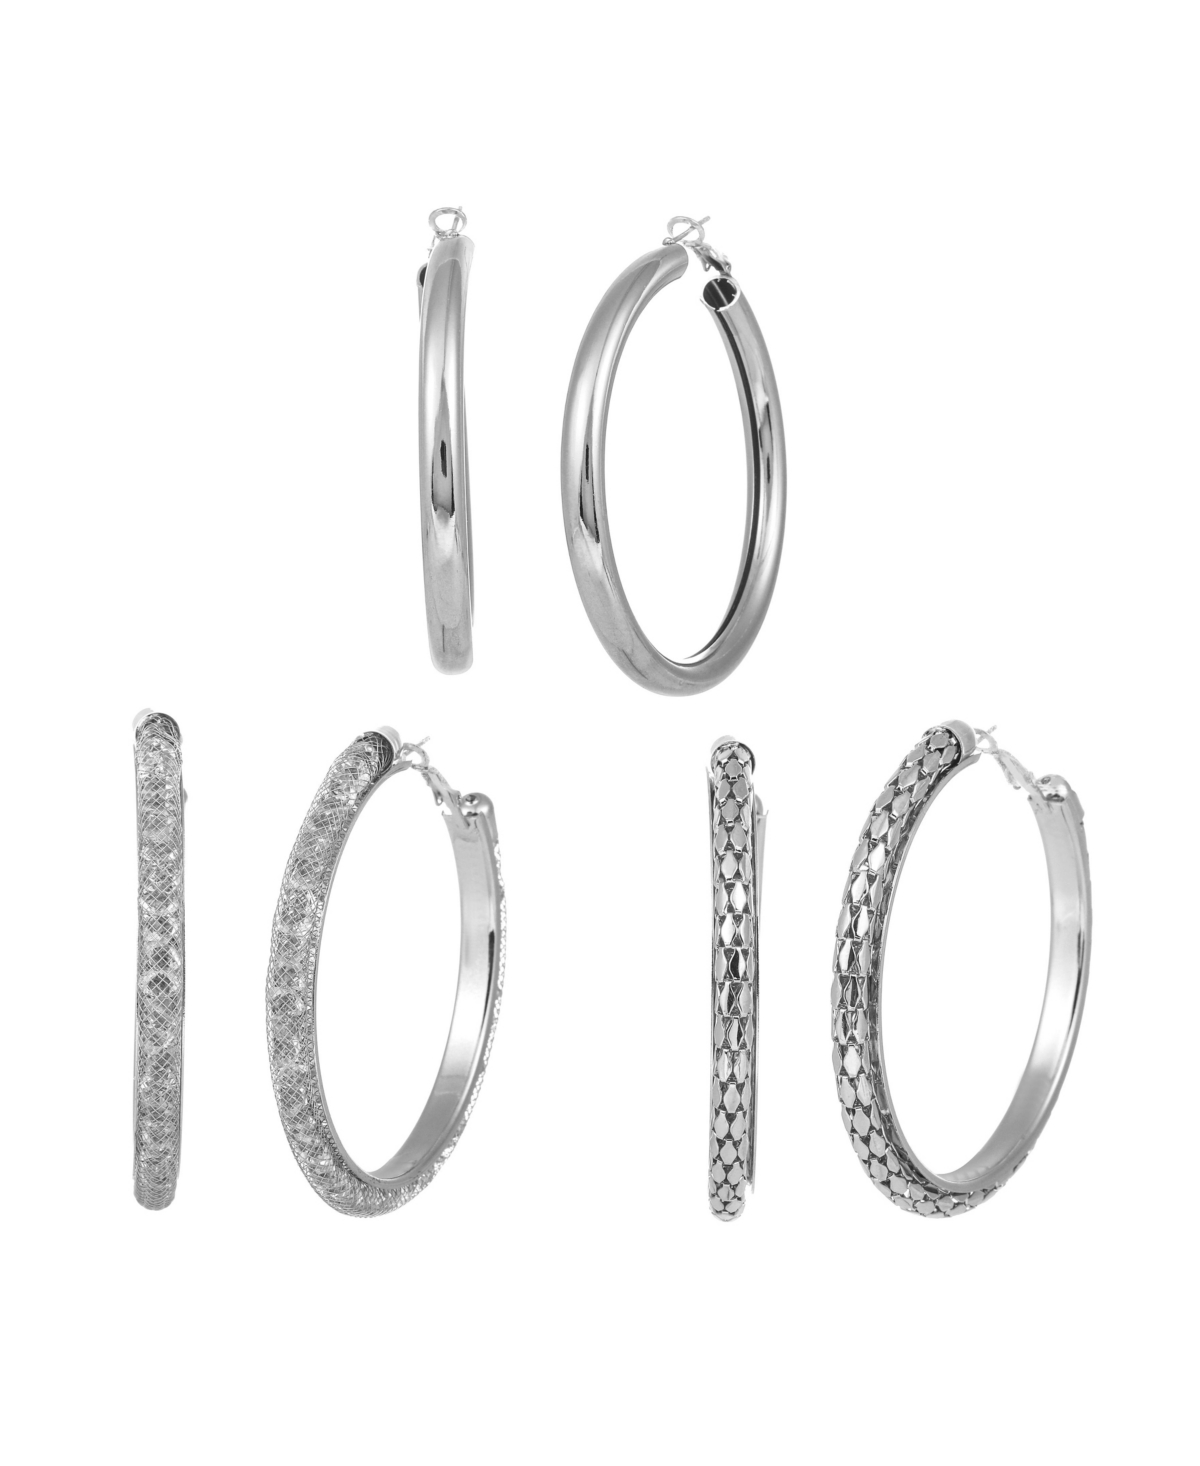 Trio Hoop Earring Set - Silver